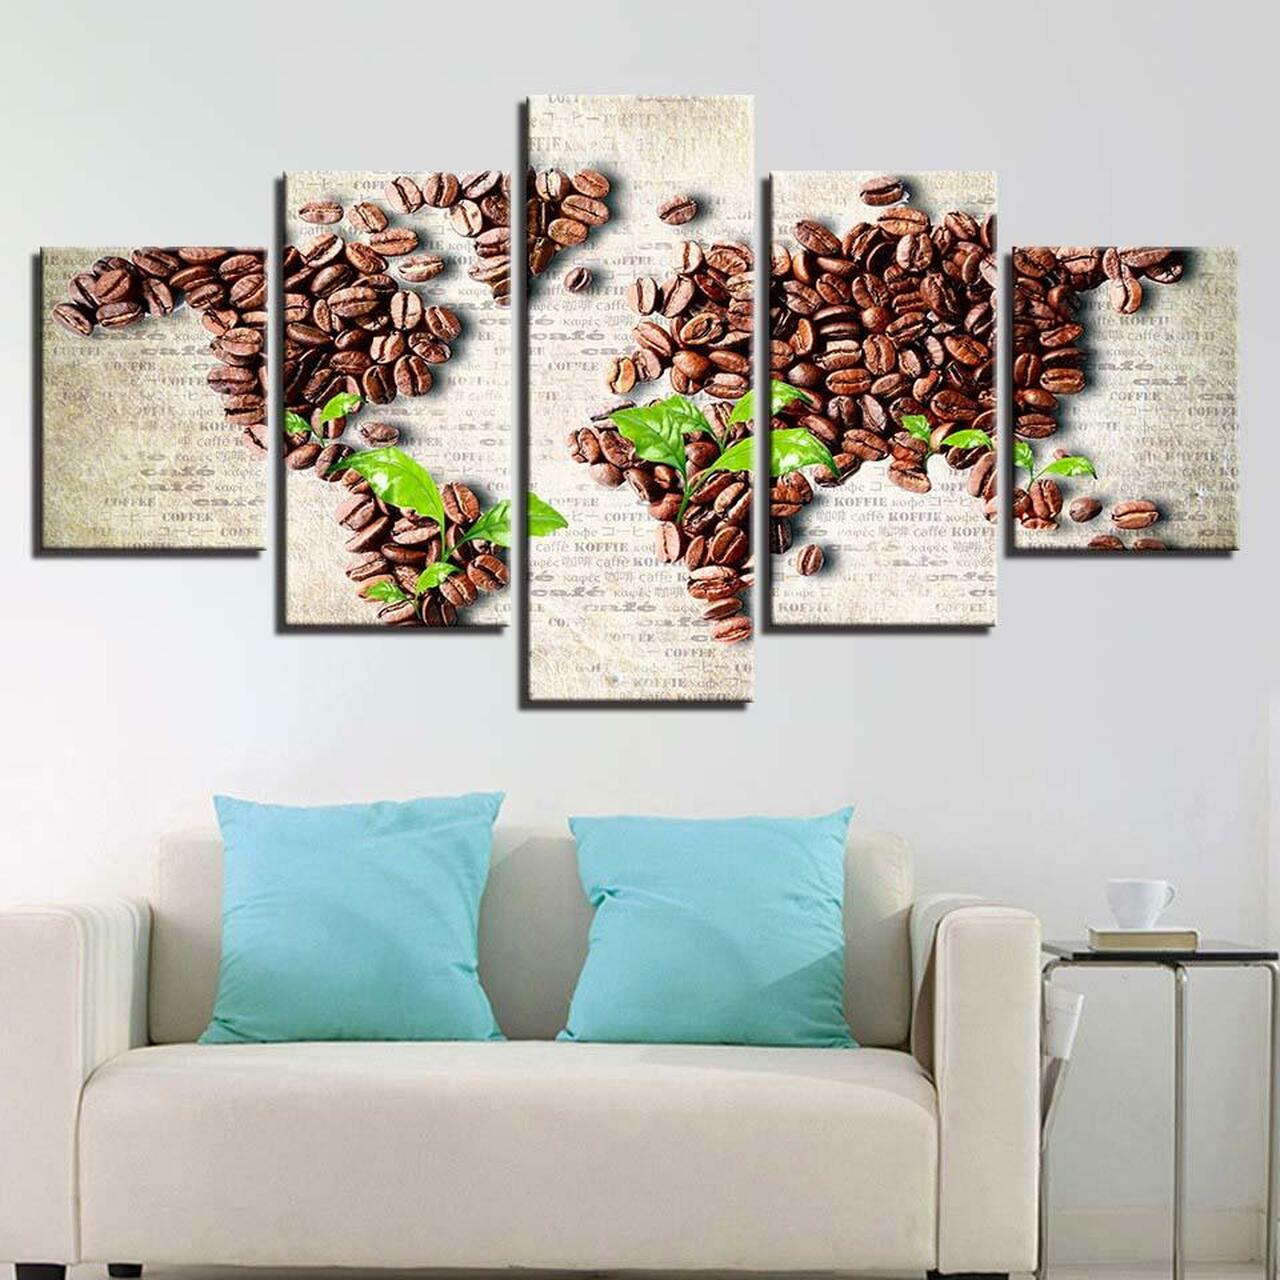 world map by coffee beans 5 pices peinture sur toile impression sur toile toile art pour la dcoration intrieuredsfoe